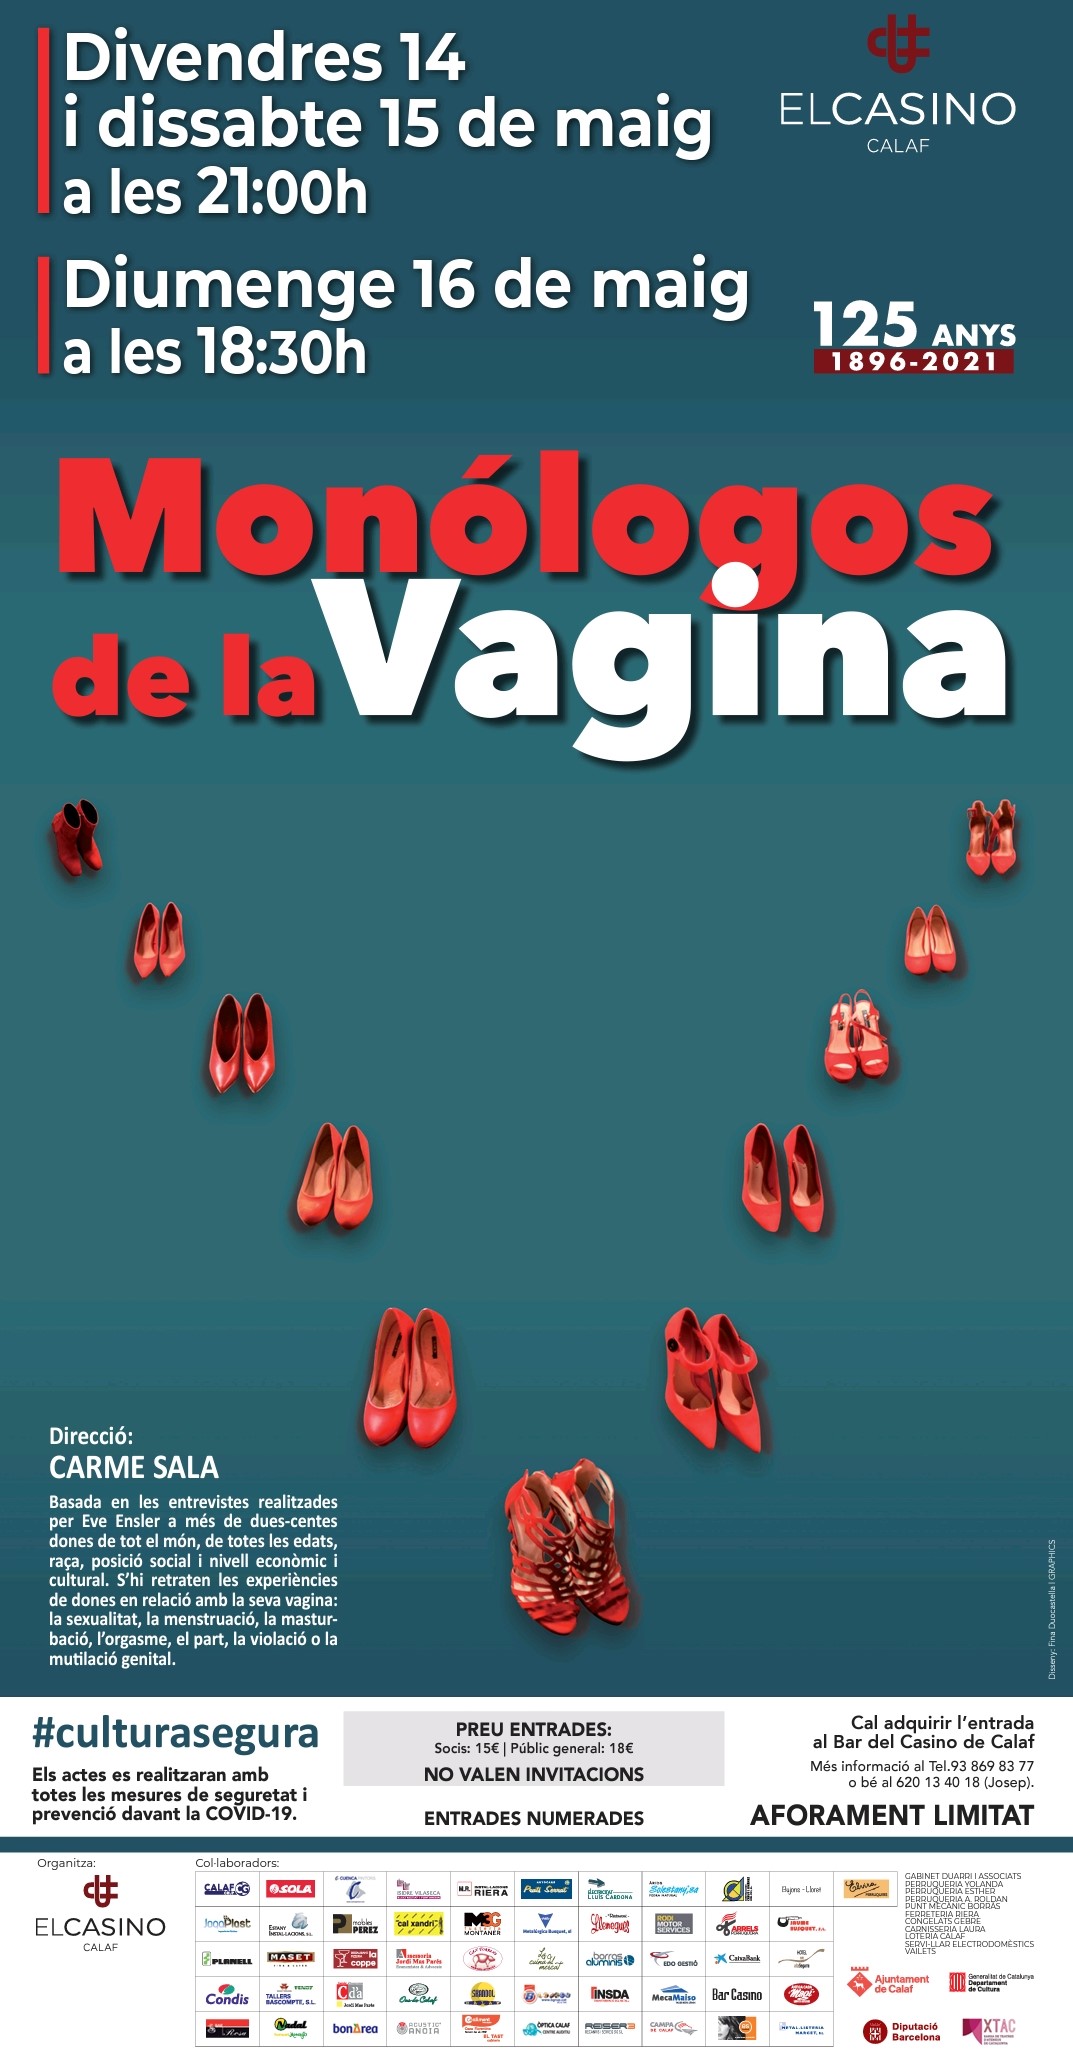 Los monólogos de la vagina_ casino de calaf